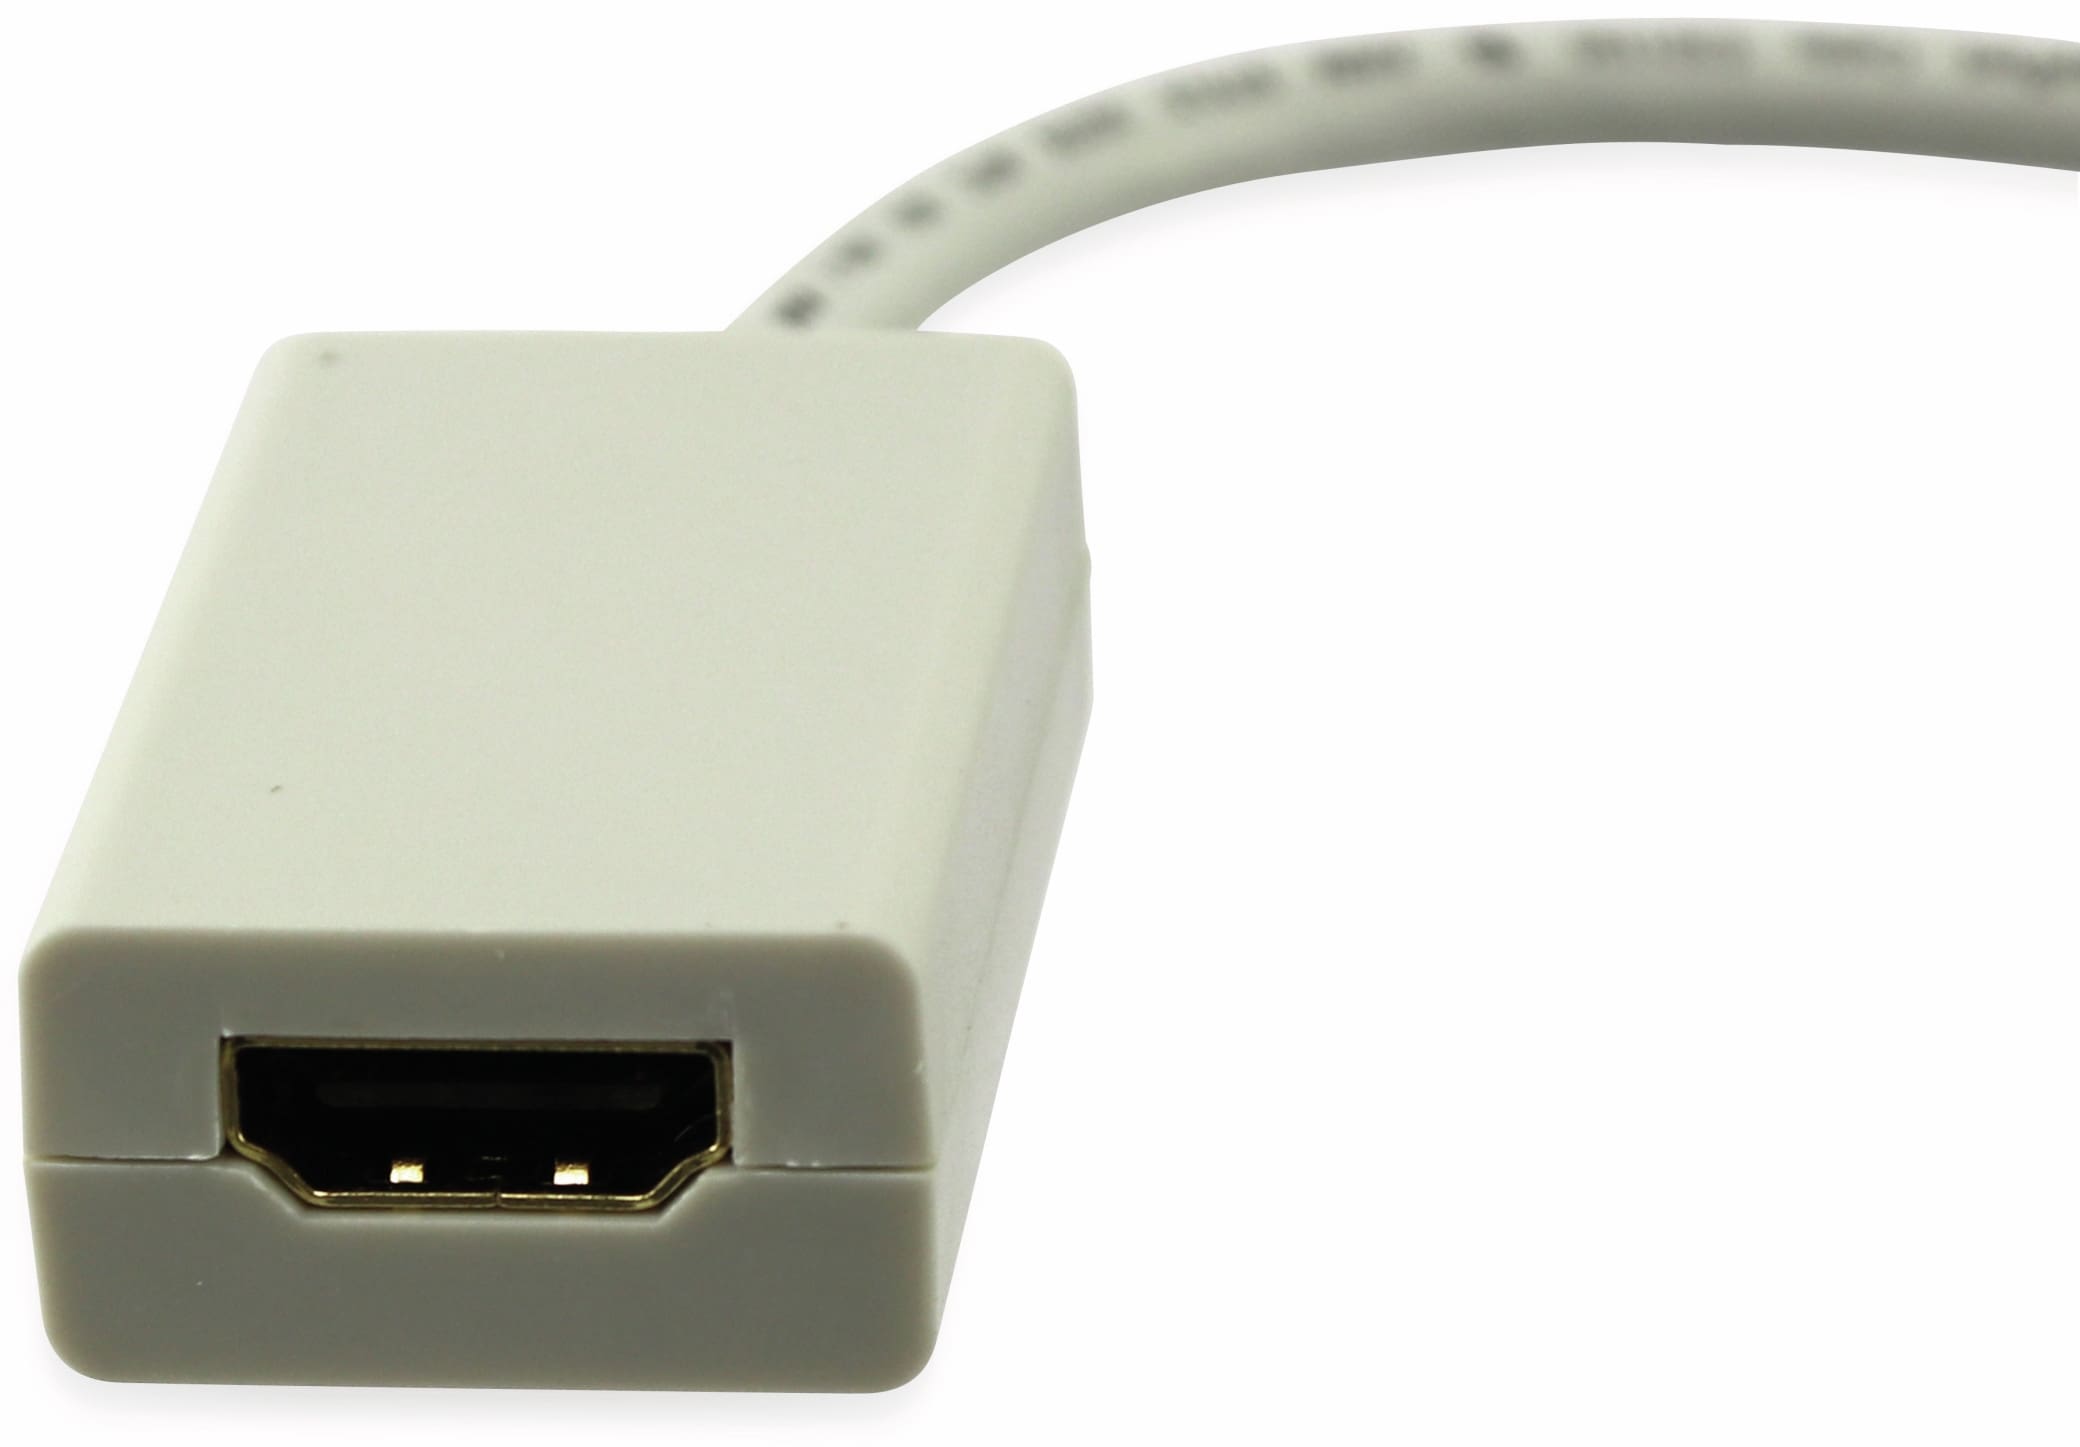 Mini DisplayPort zu HDMI Adapter, 2 Link, MM014